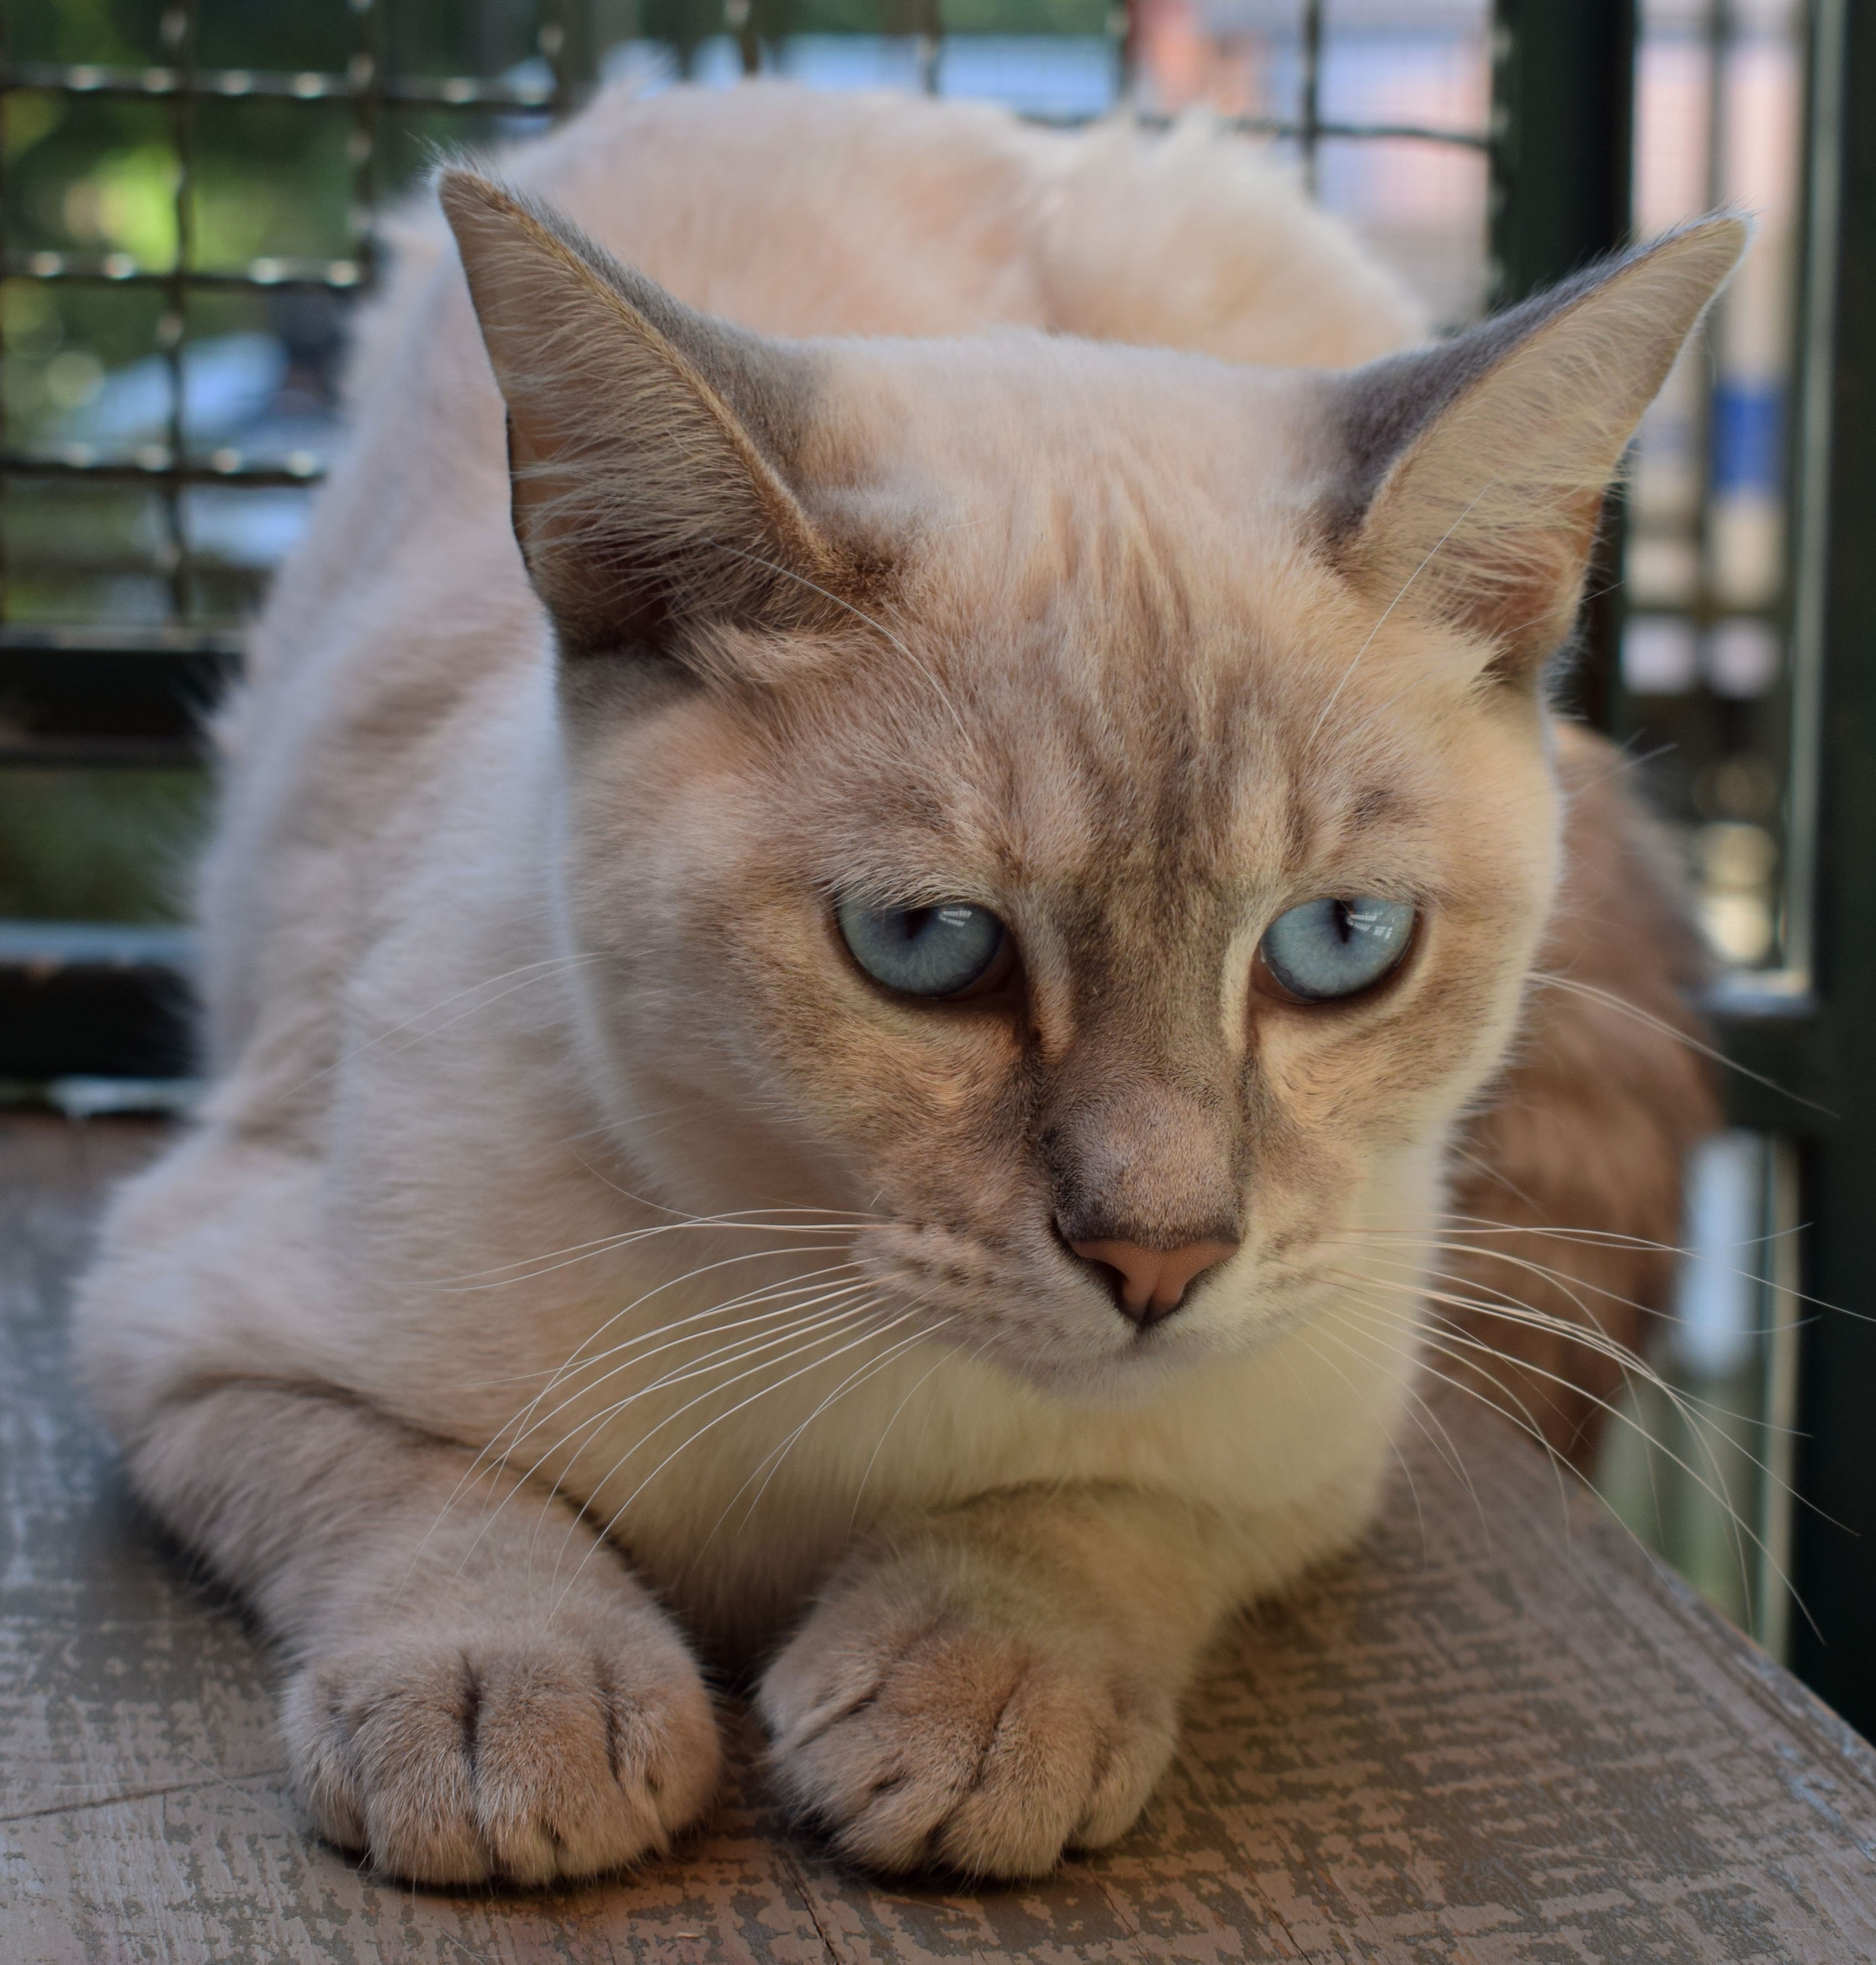 #ParaCegoVer: Angela é uma gata com pelagem marrom claro, seus olhos são azuis e ela está deitada em uma caixa